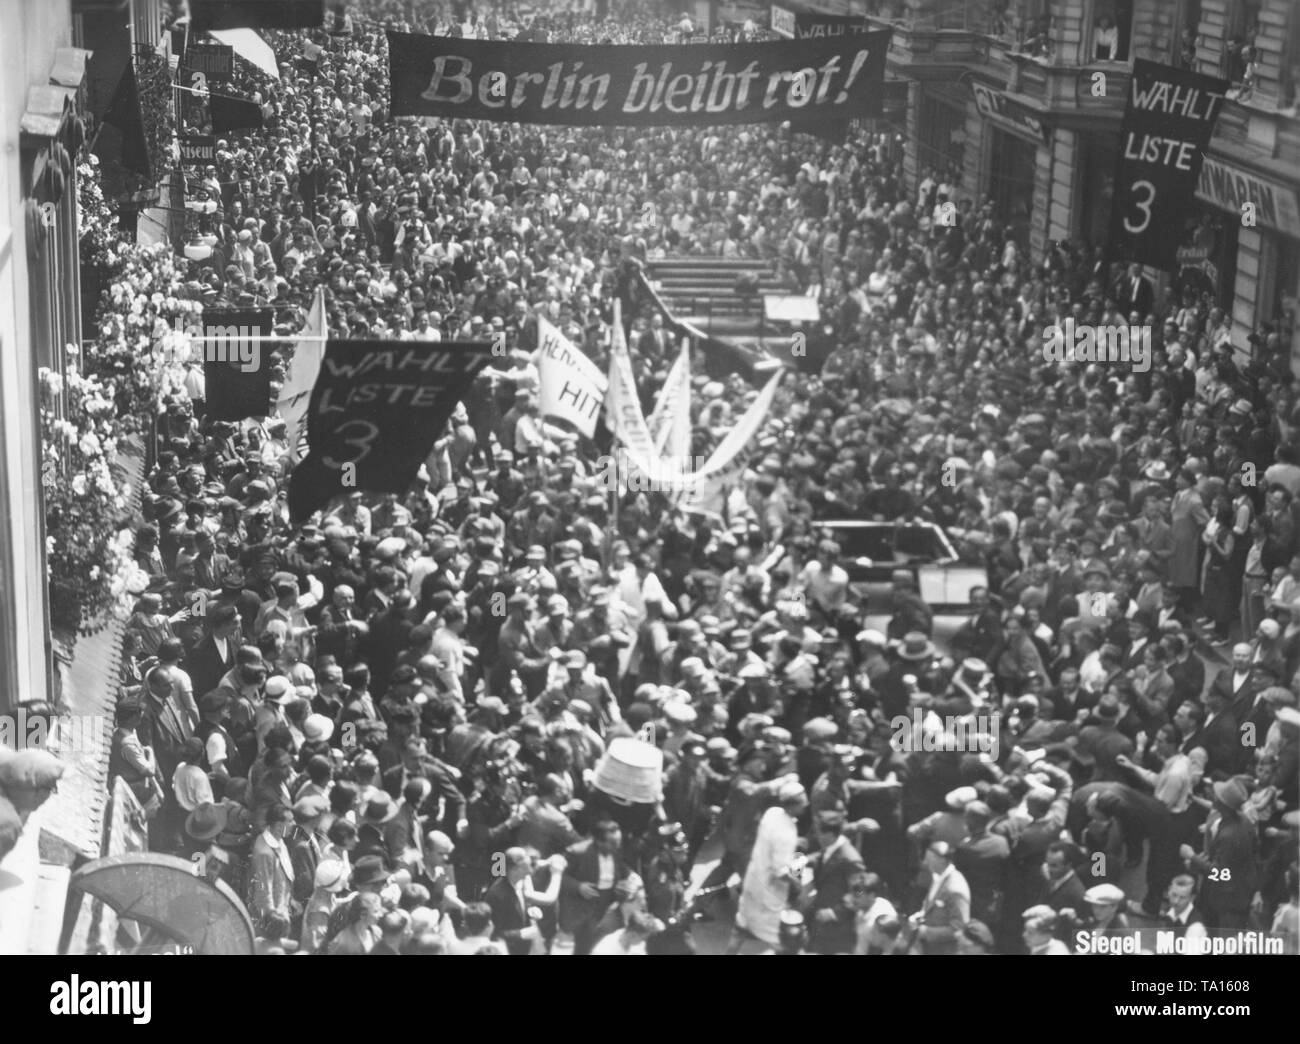 In der NS-Propaganda Film "Hans Westmar - Eines von vielen" (ursprünglich "Horst Wessel") von 1933, die Ermordung von Horst Wessel ist in der Diskussion um eine antikommunistische Stimmung. Hier ist eine Demonstration der KPD im Bezirk Friedrichshain in Berlin auf ein Banner ist die Inschrift "Berlin bleibt rot! Stockfoto